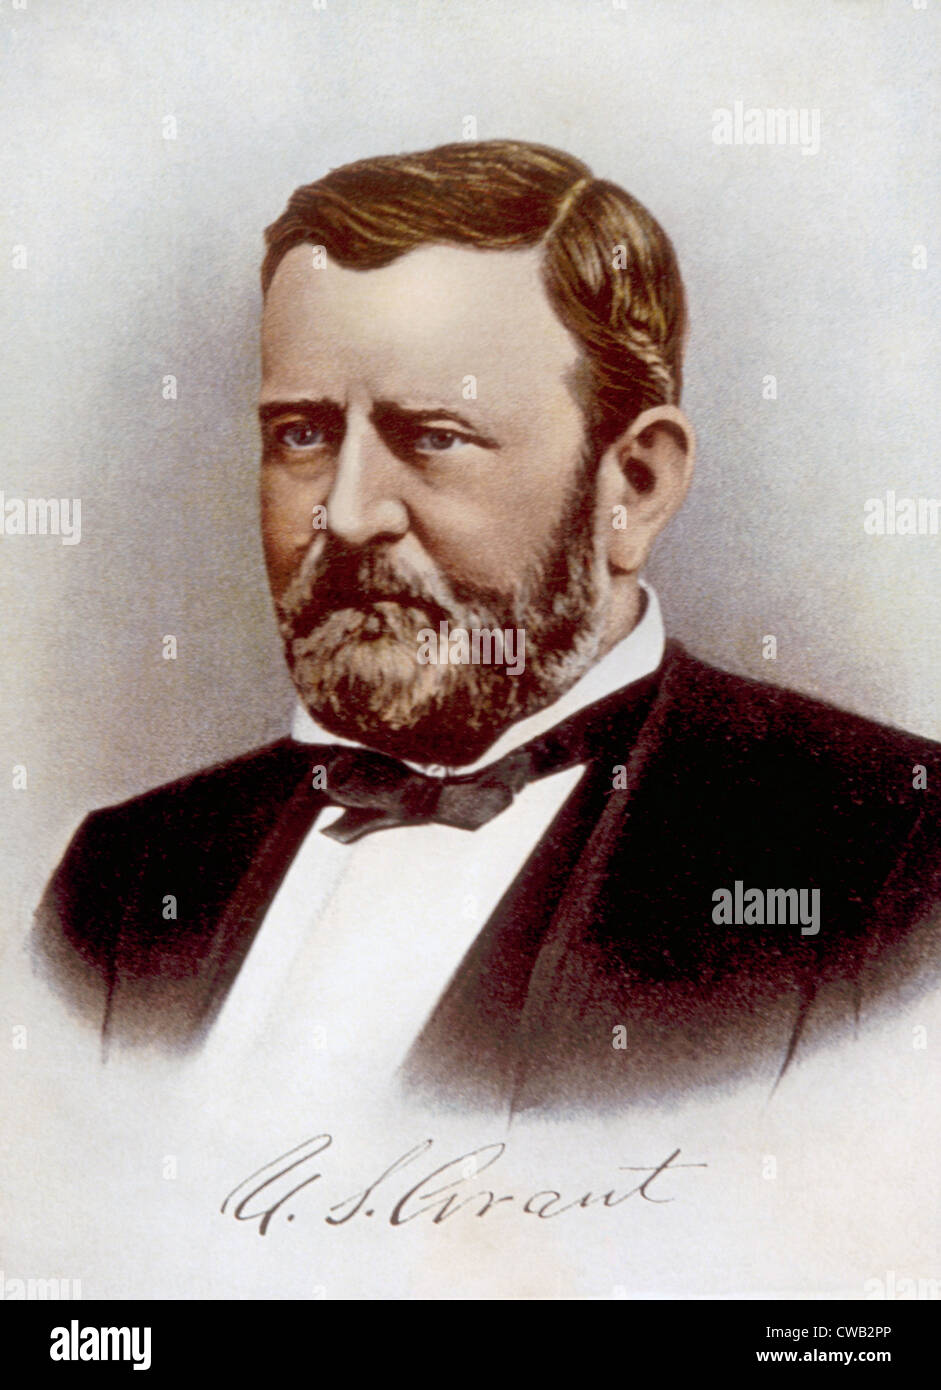 Ulysses S. Grant (1822-1885), U.S. President (1869-1877) Stock Photo